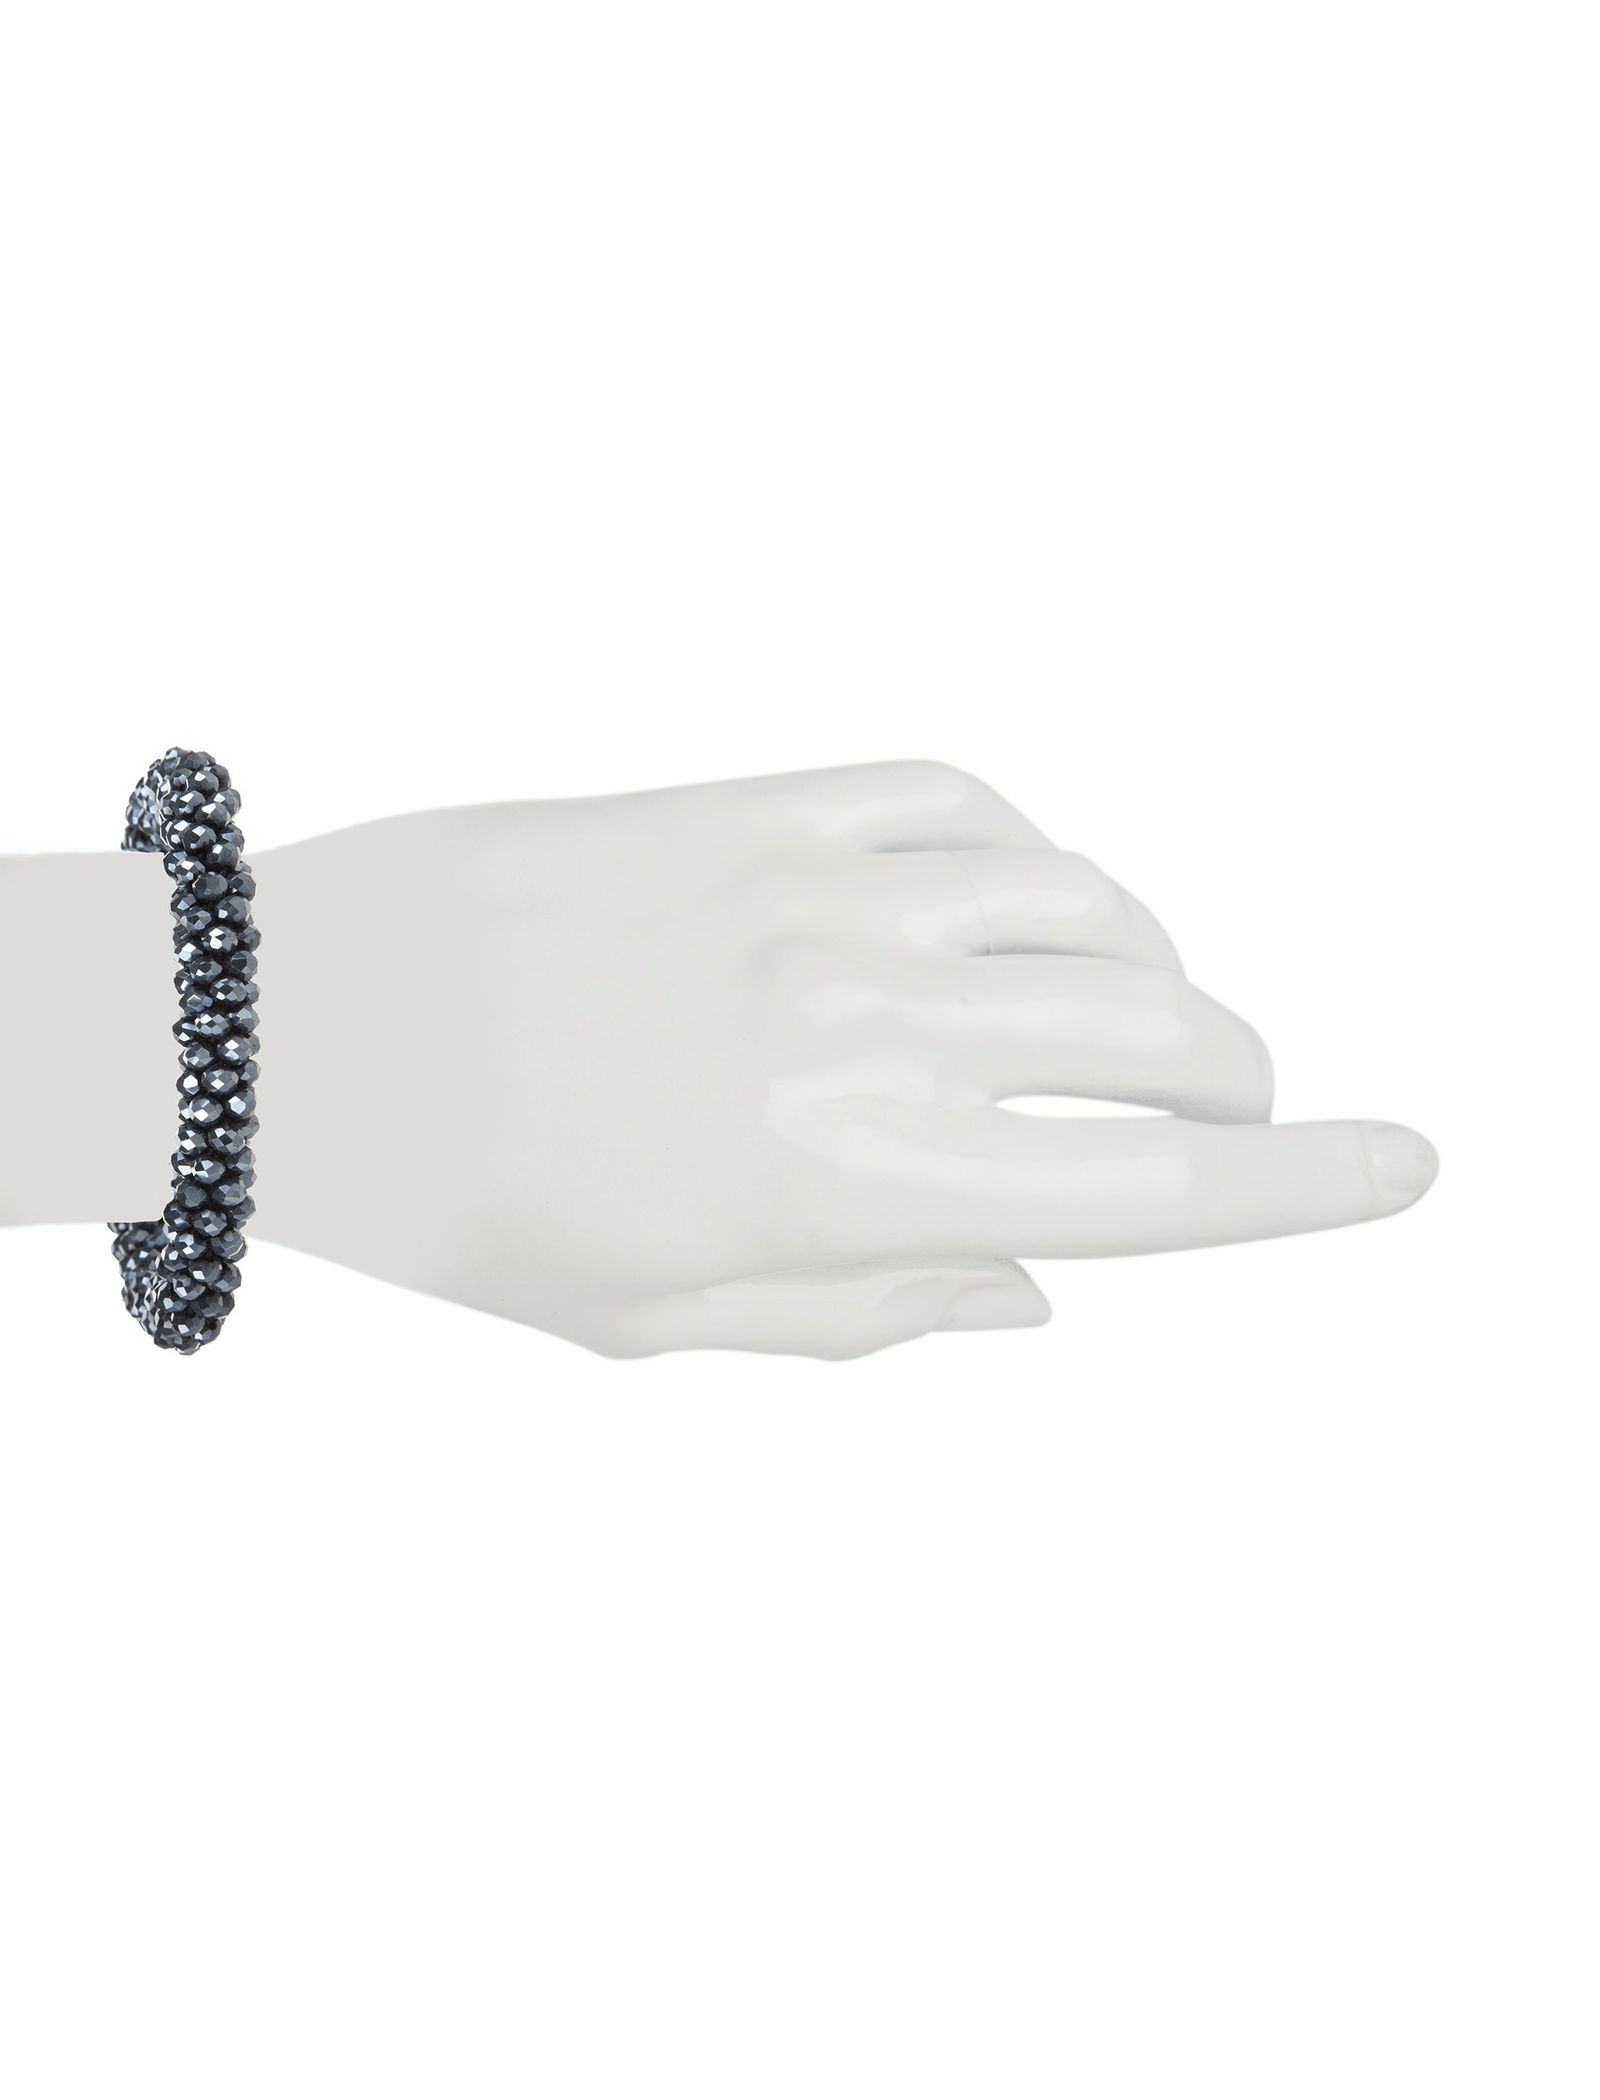 دستبند کشی زنانه - پونت روما تک سایز - آبي طوسي - 5